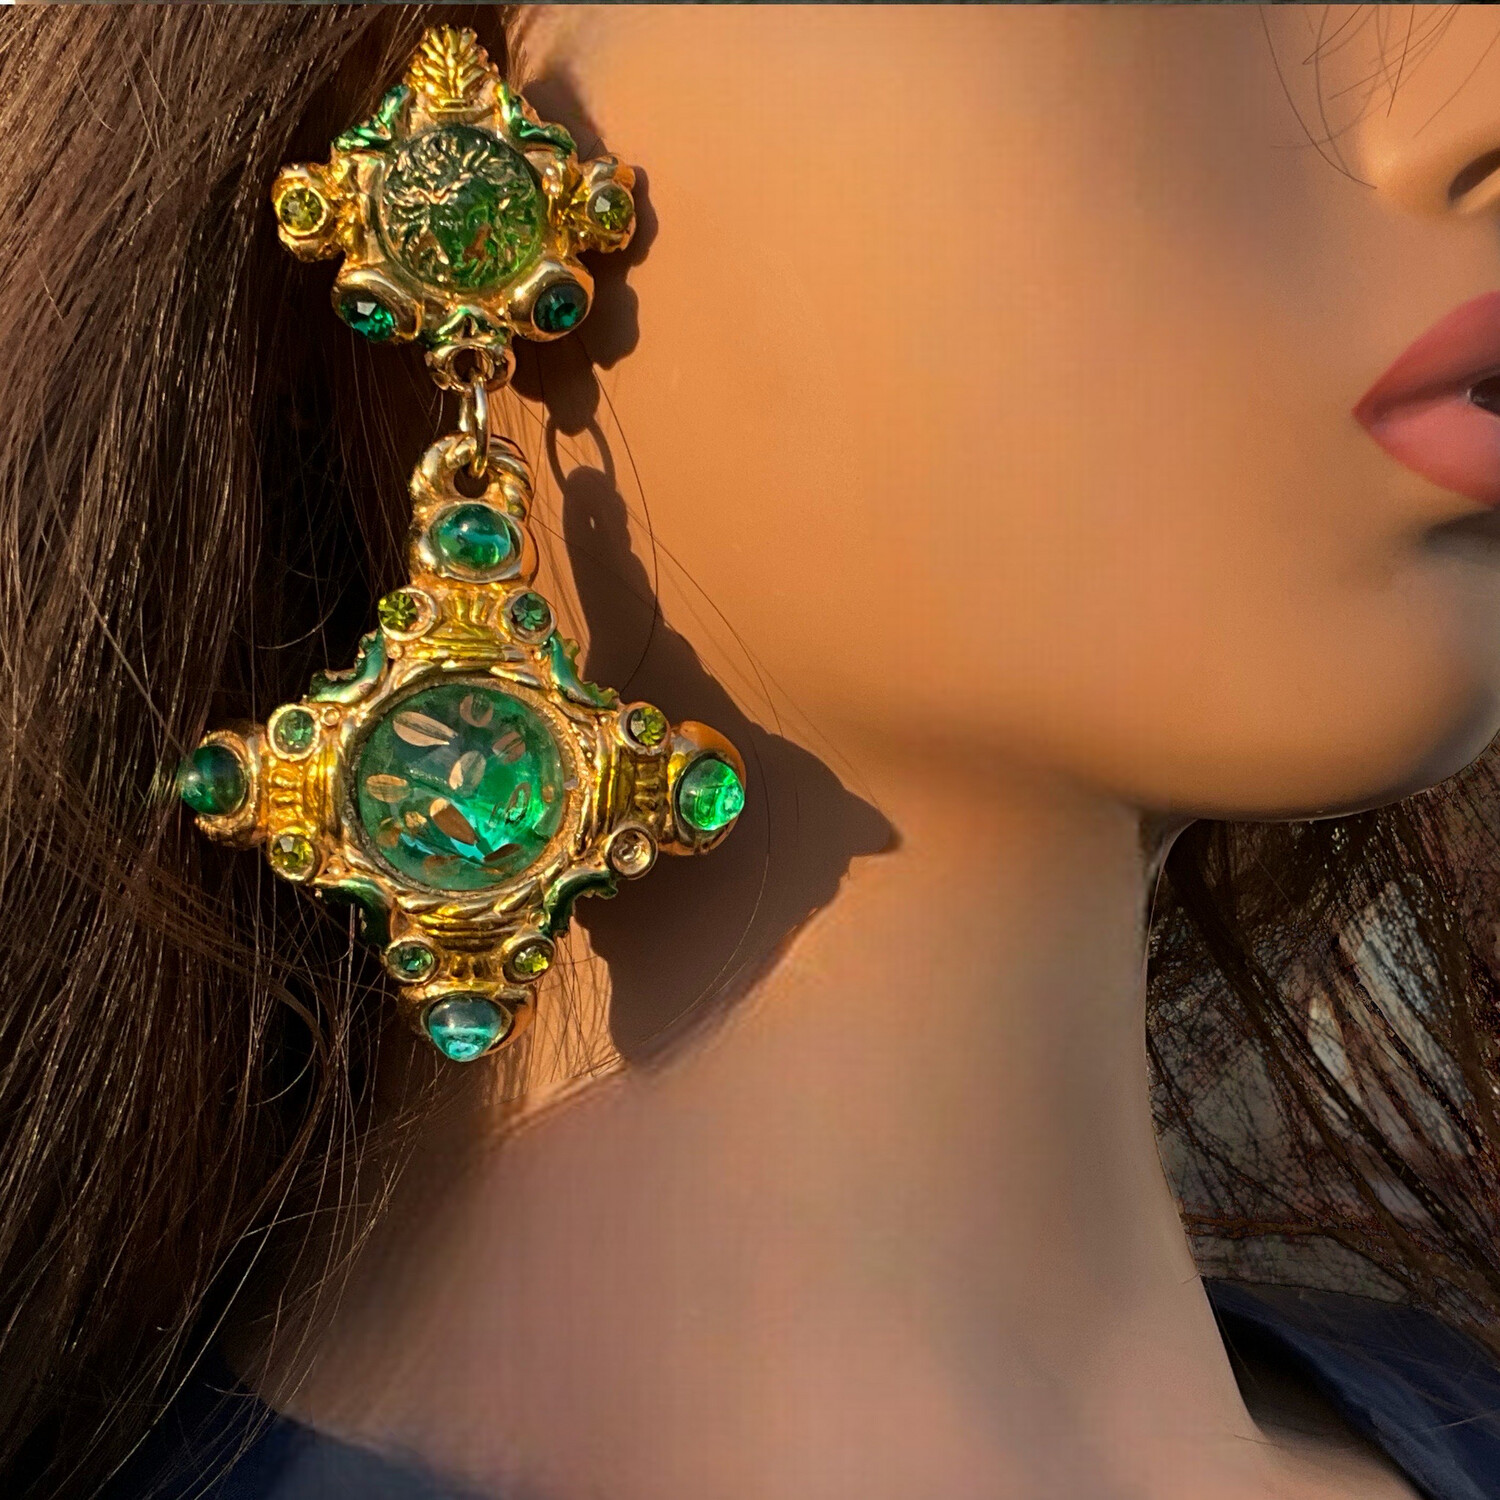 Unsigned Jacky De g oversize earrings, pendants in green color